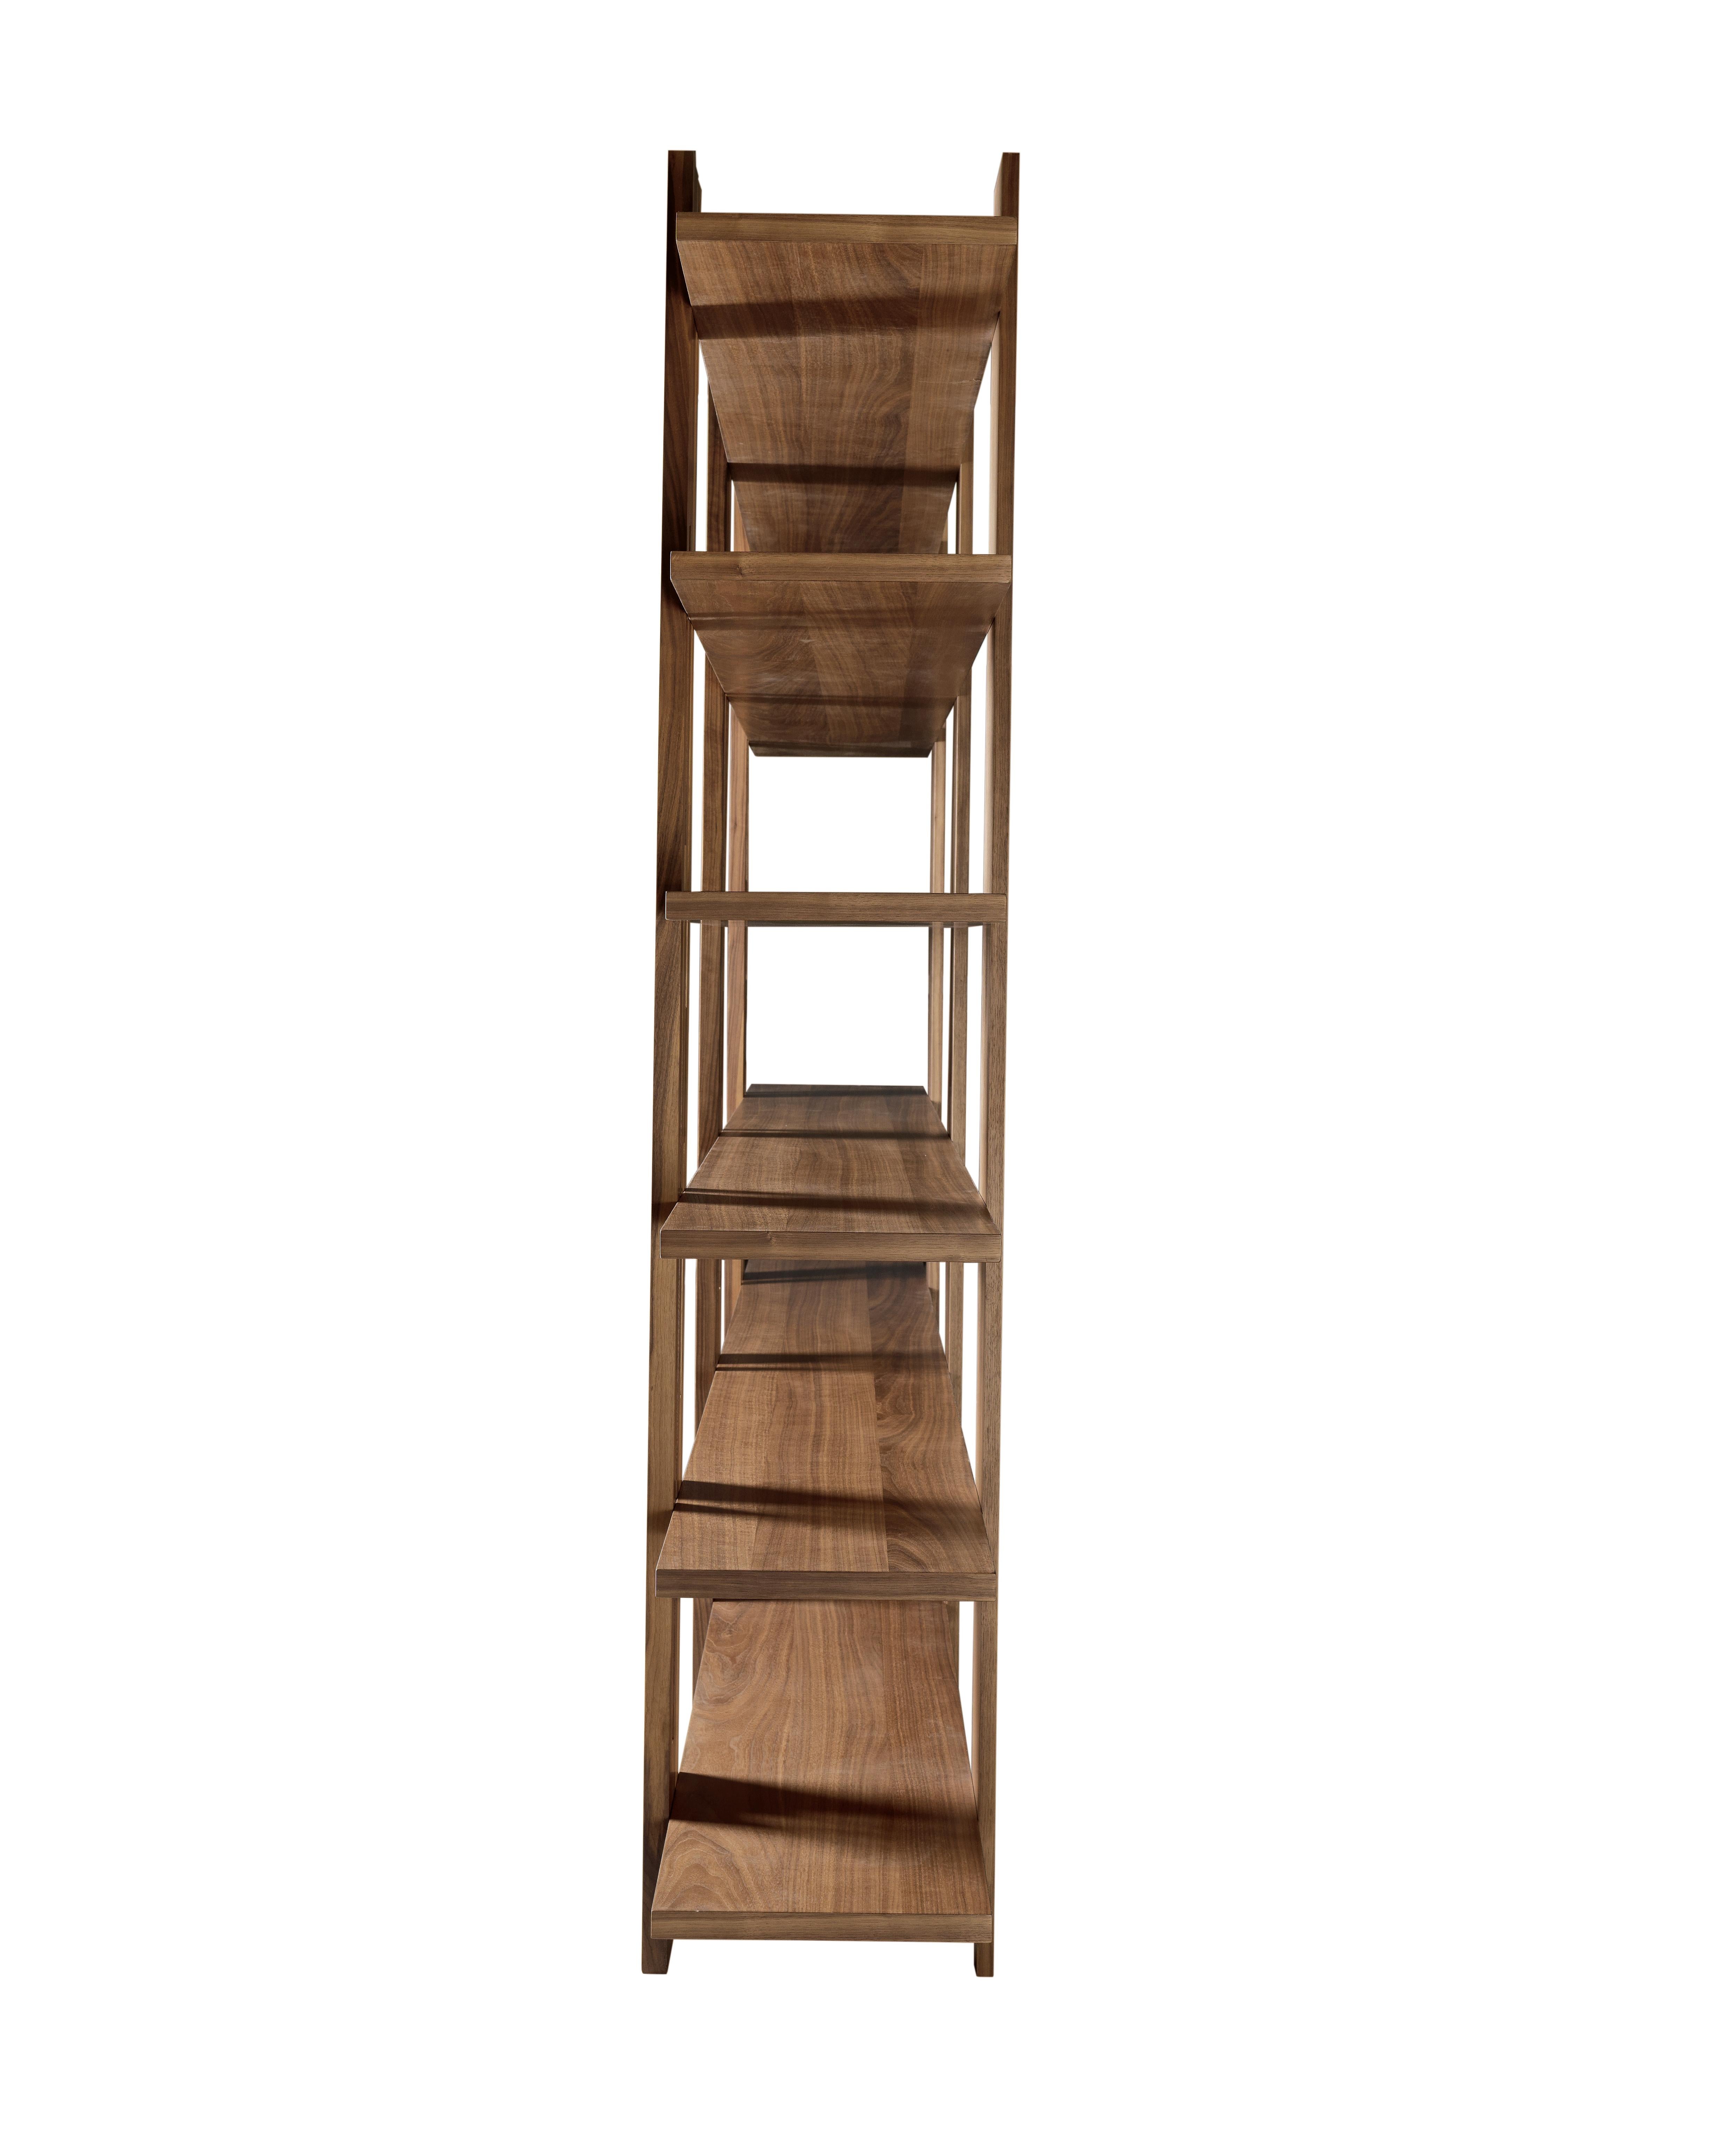 Das Bücherregal Gravità aus Massivholz ist eine schlichte und geradlinige Komposition, die ein Gefühl des Schwebens vermittelt. Es verwendet magnetische vertikale Elemente, um die Fugen der Auflageflächen zu verbergen.